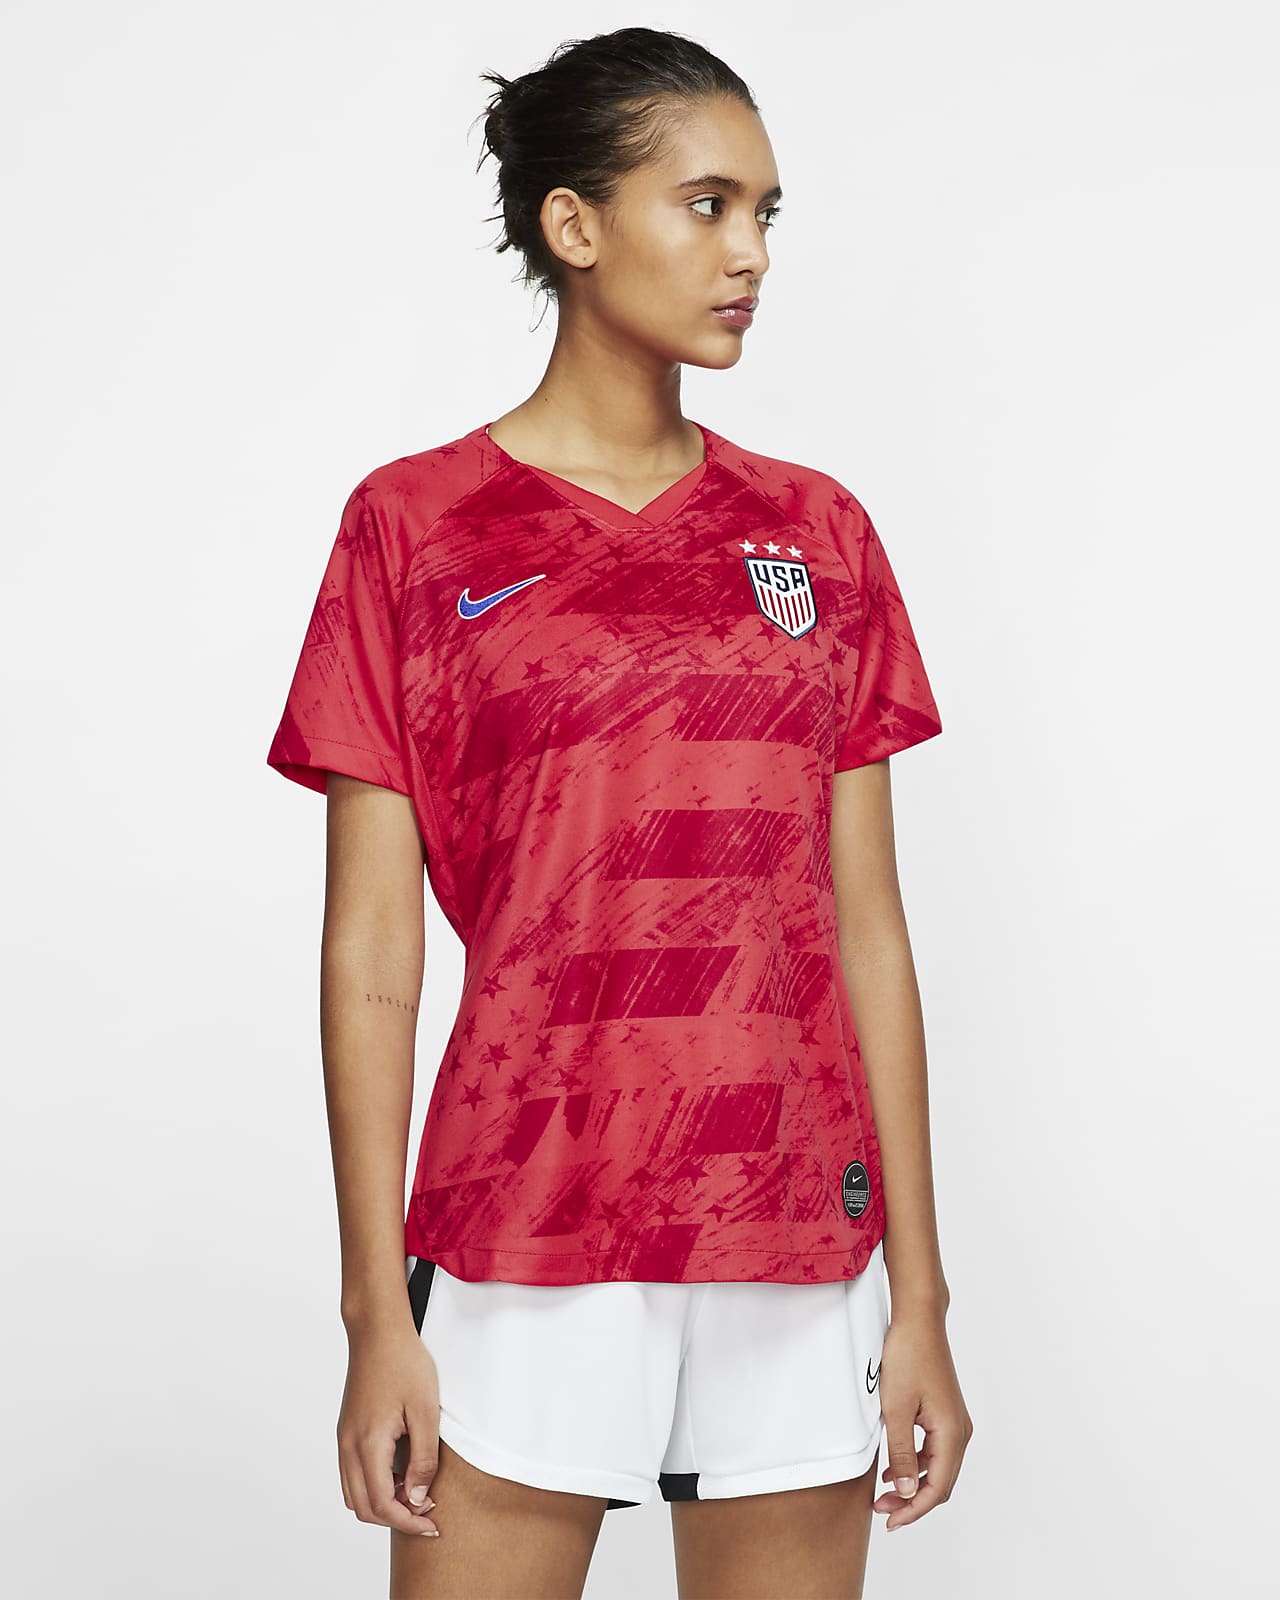 2019 赛季美国队客场女子足球球迷服